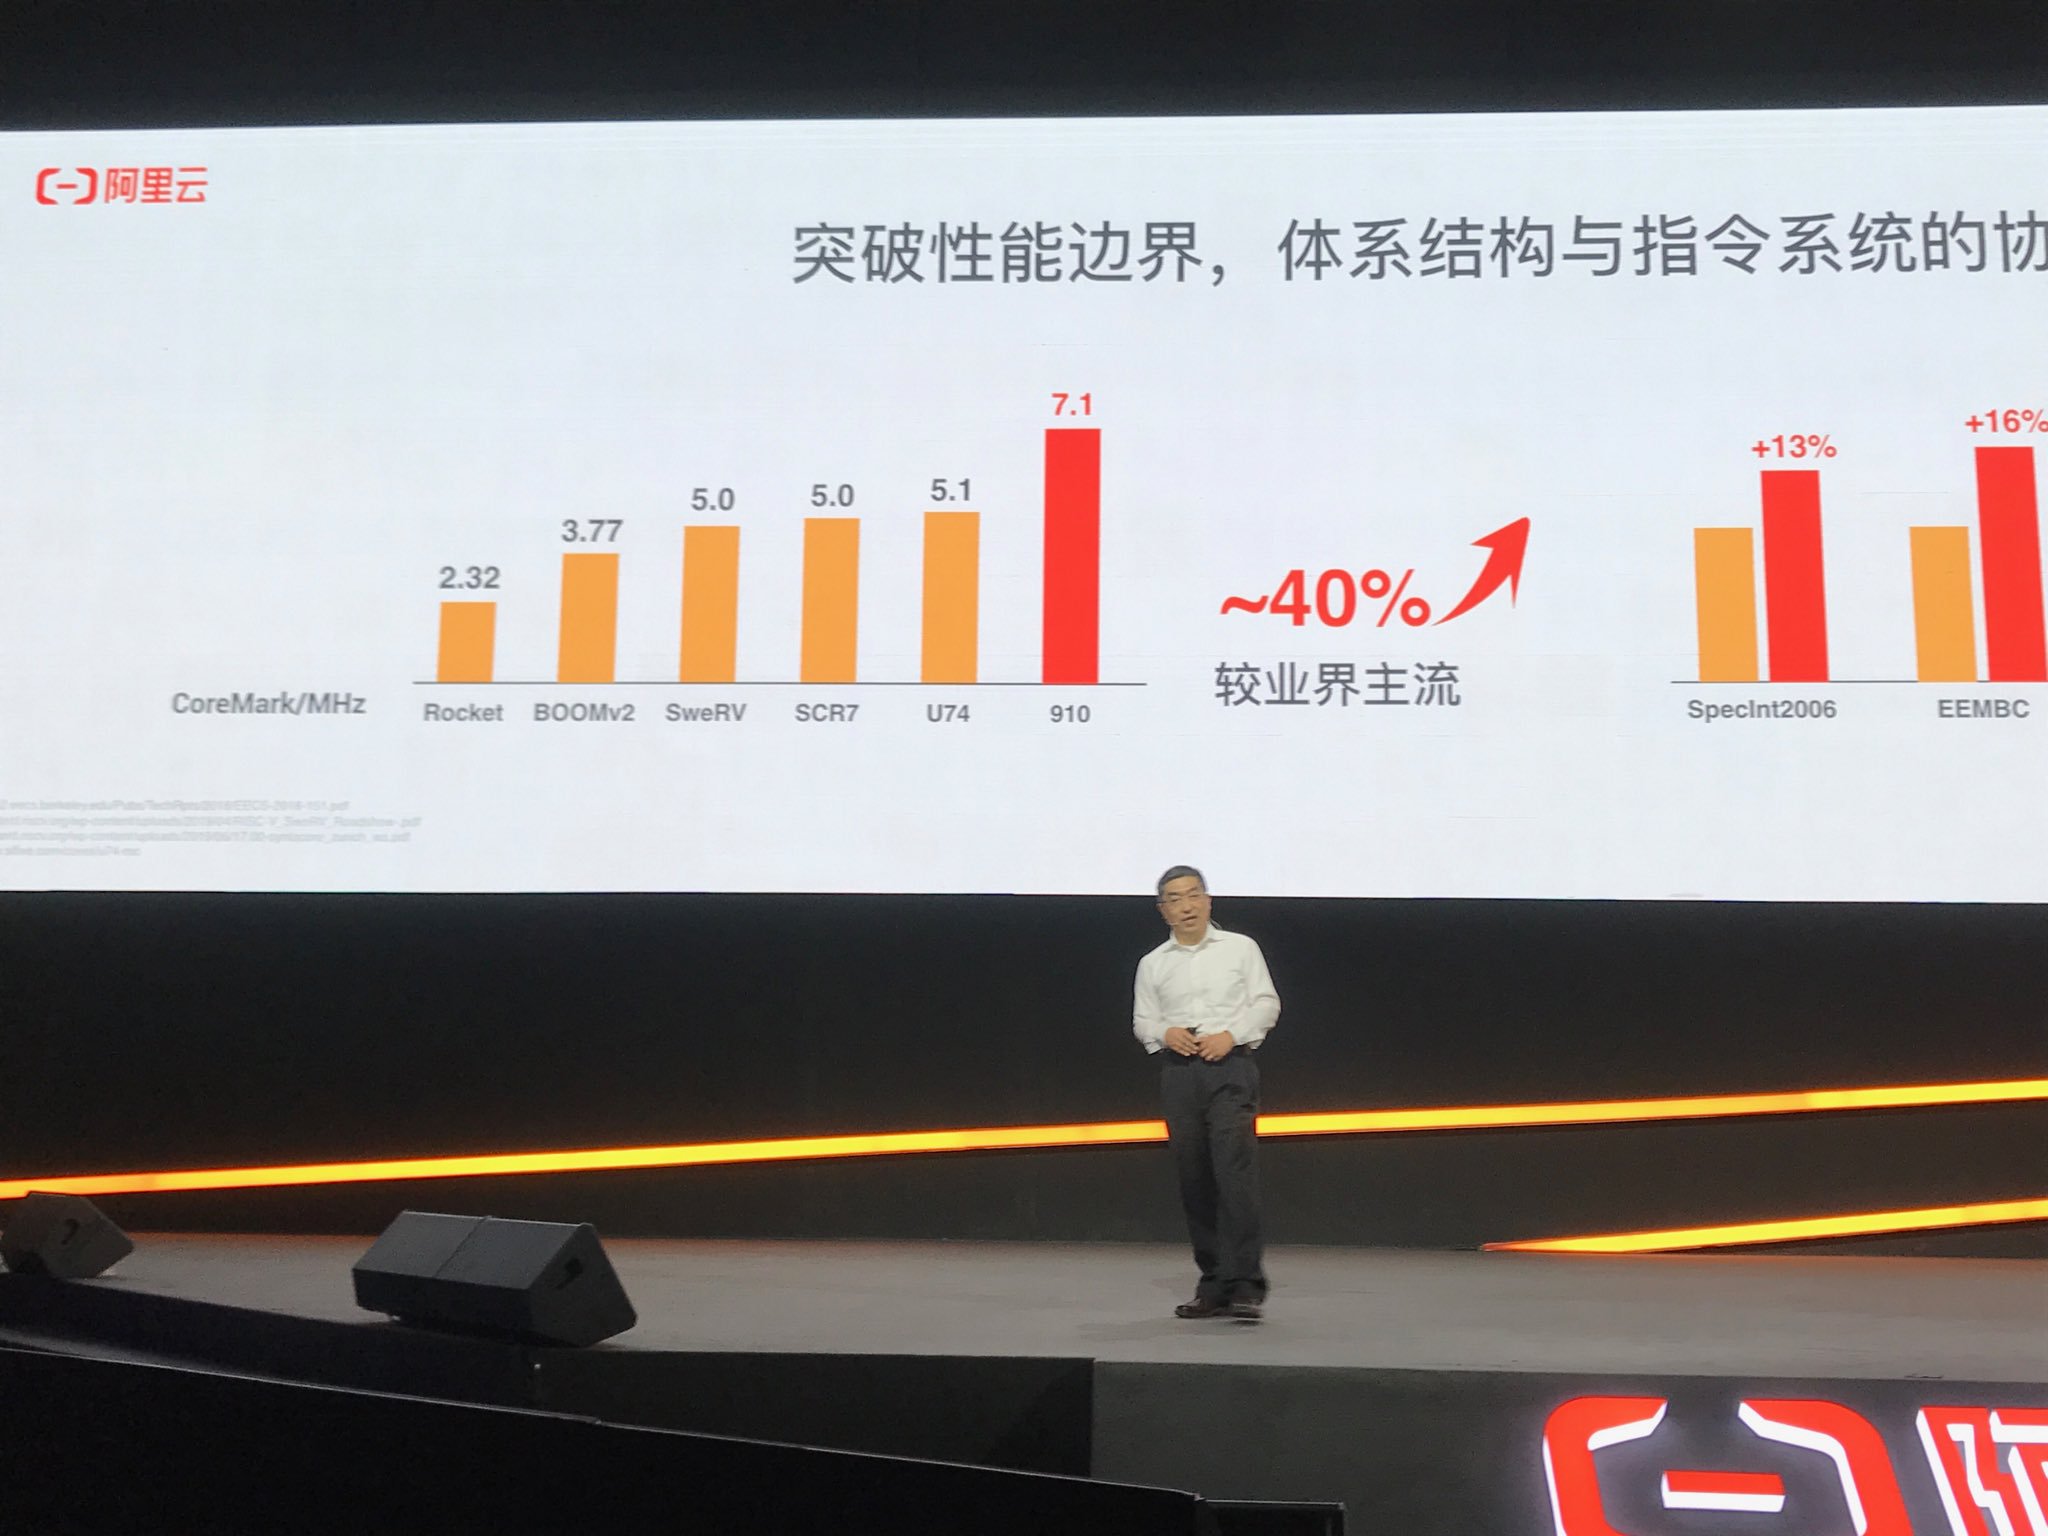 Alibaba RISC-V mimarili 16 çekirdekli işlemcisini tanıttı : %40 daha hızlı